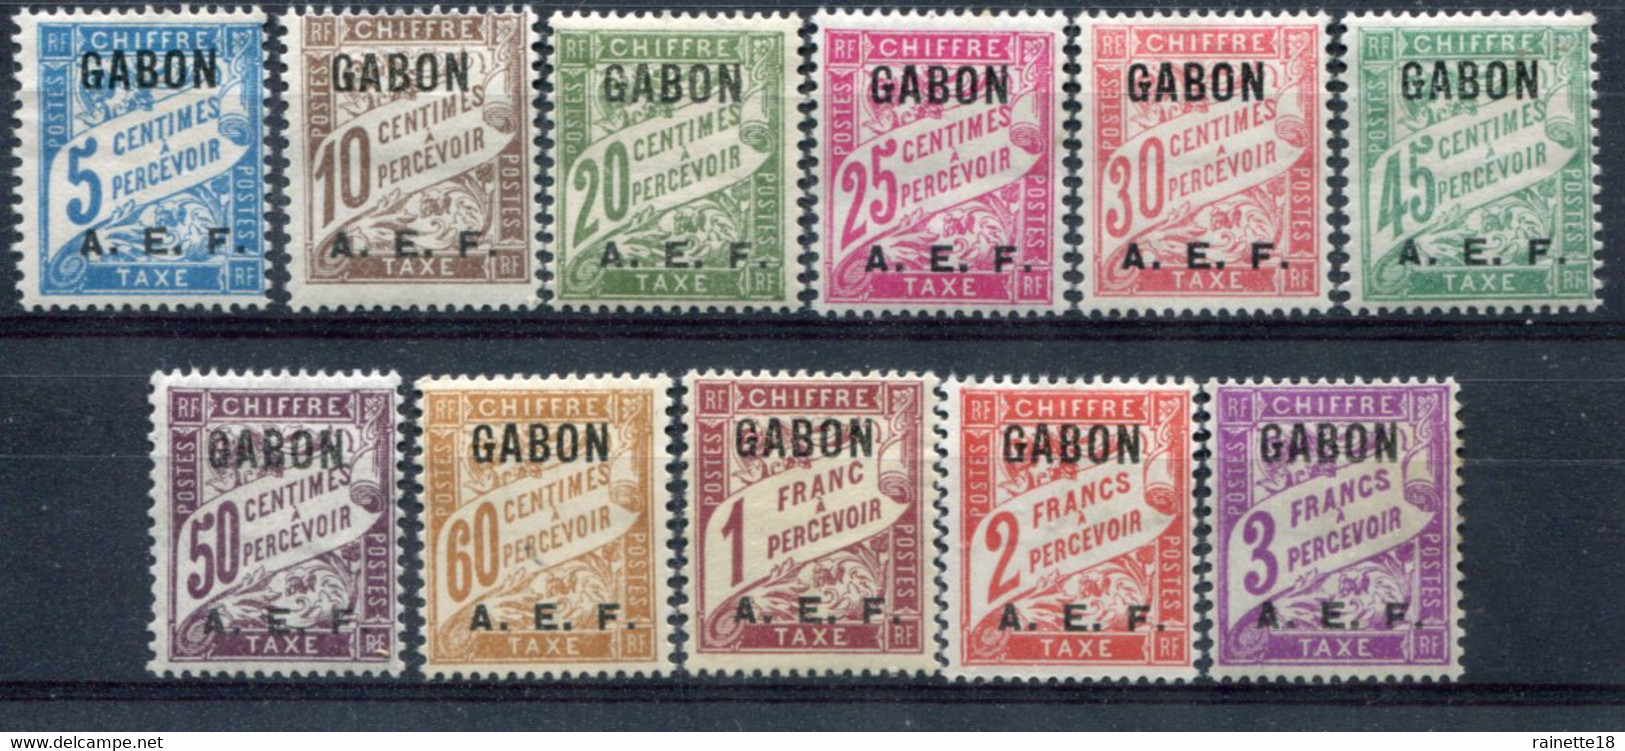 Gabon                               Taxes        1/11 * - Postage Due